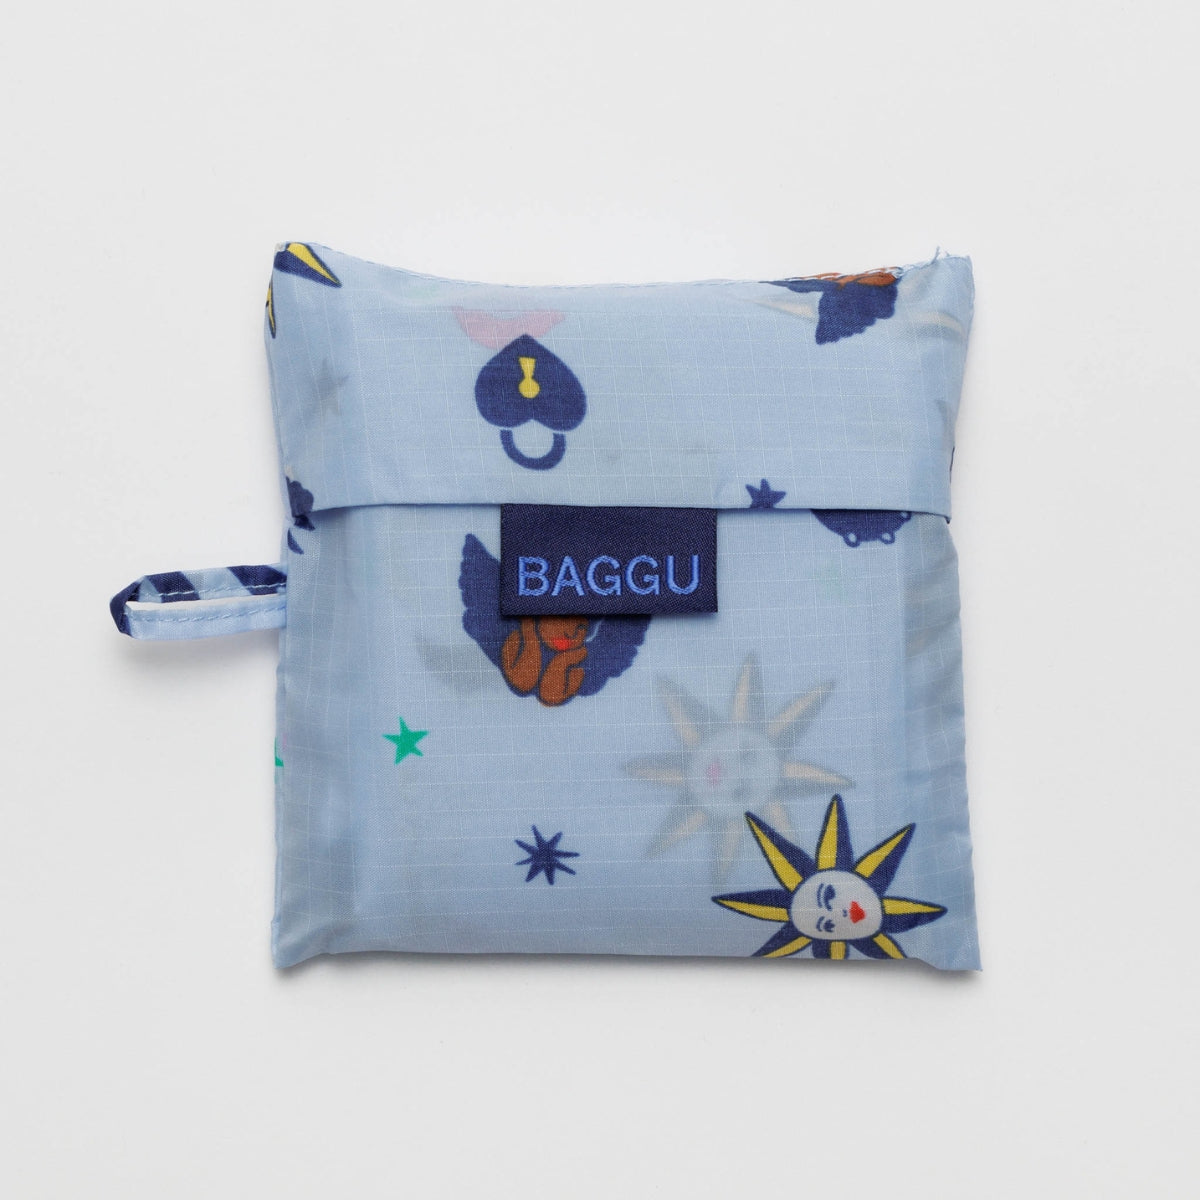 Baggu Standard Bag in Ditsy Charms